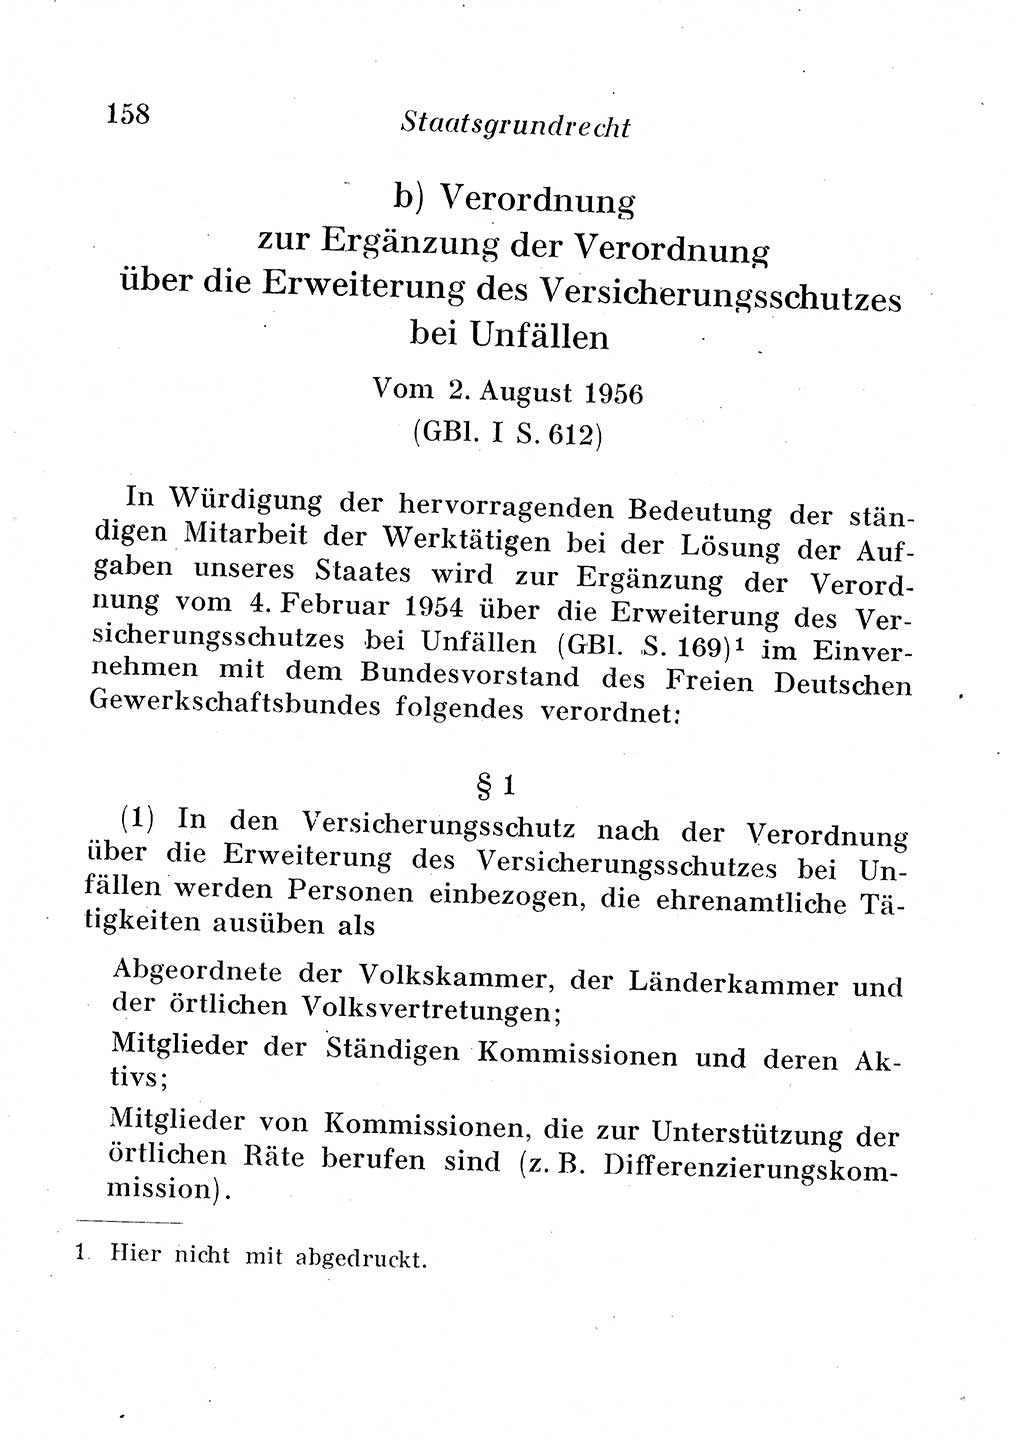 Staats- und verwaltungsrechtliche Gesetze der Deutschen Demokratischen Republik (DDR) 1958, Seite 158 (StVerwR Ges. DDR 1958, S. 158)